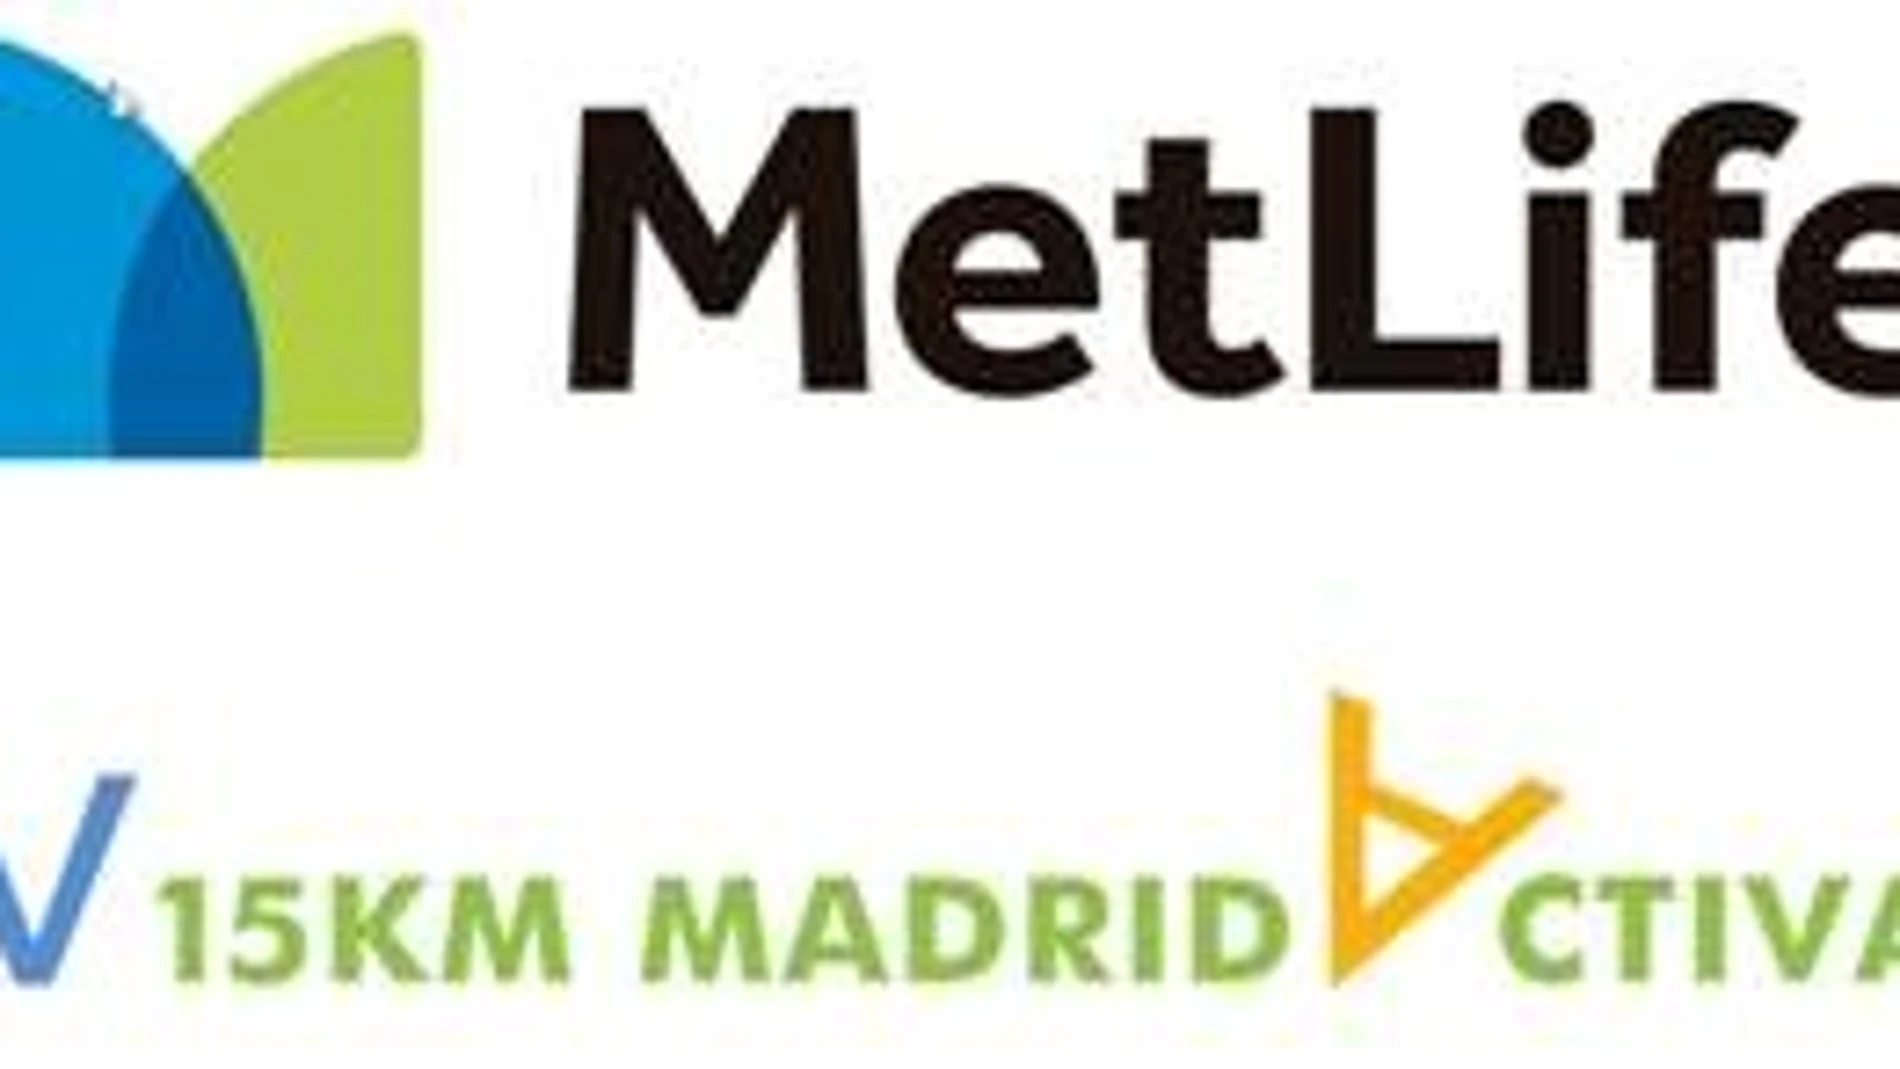 Llega la V Edición de 15 km MetLife Madrid Activa